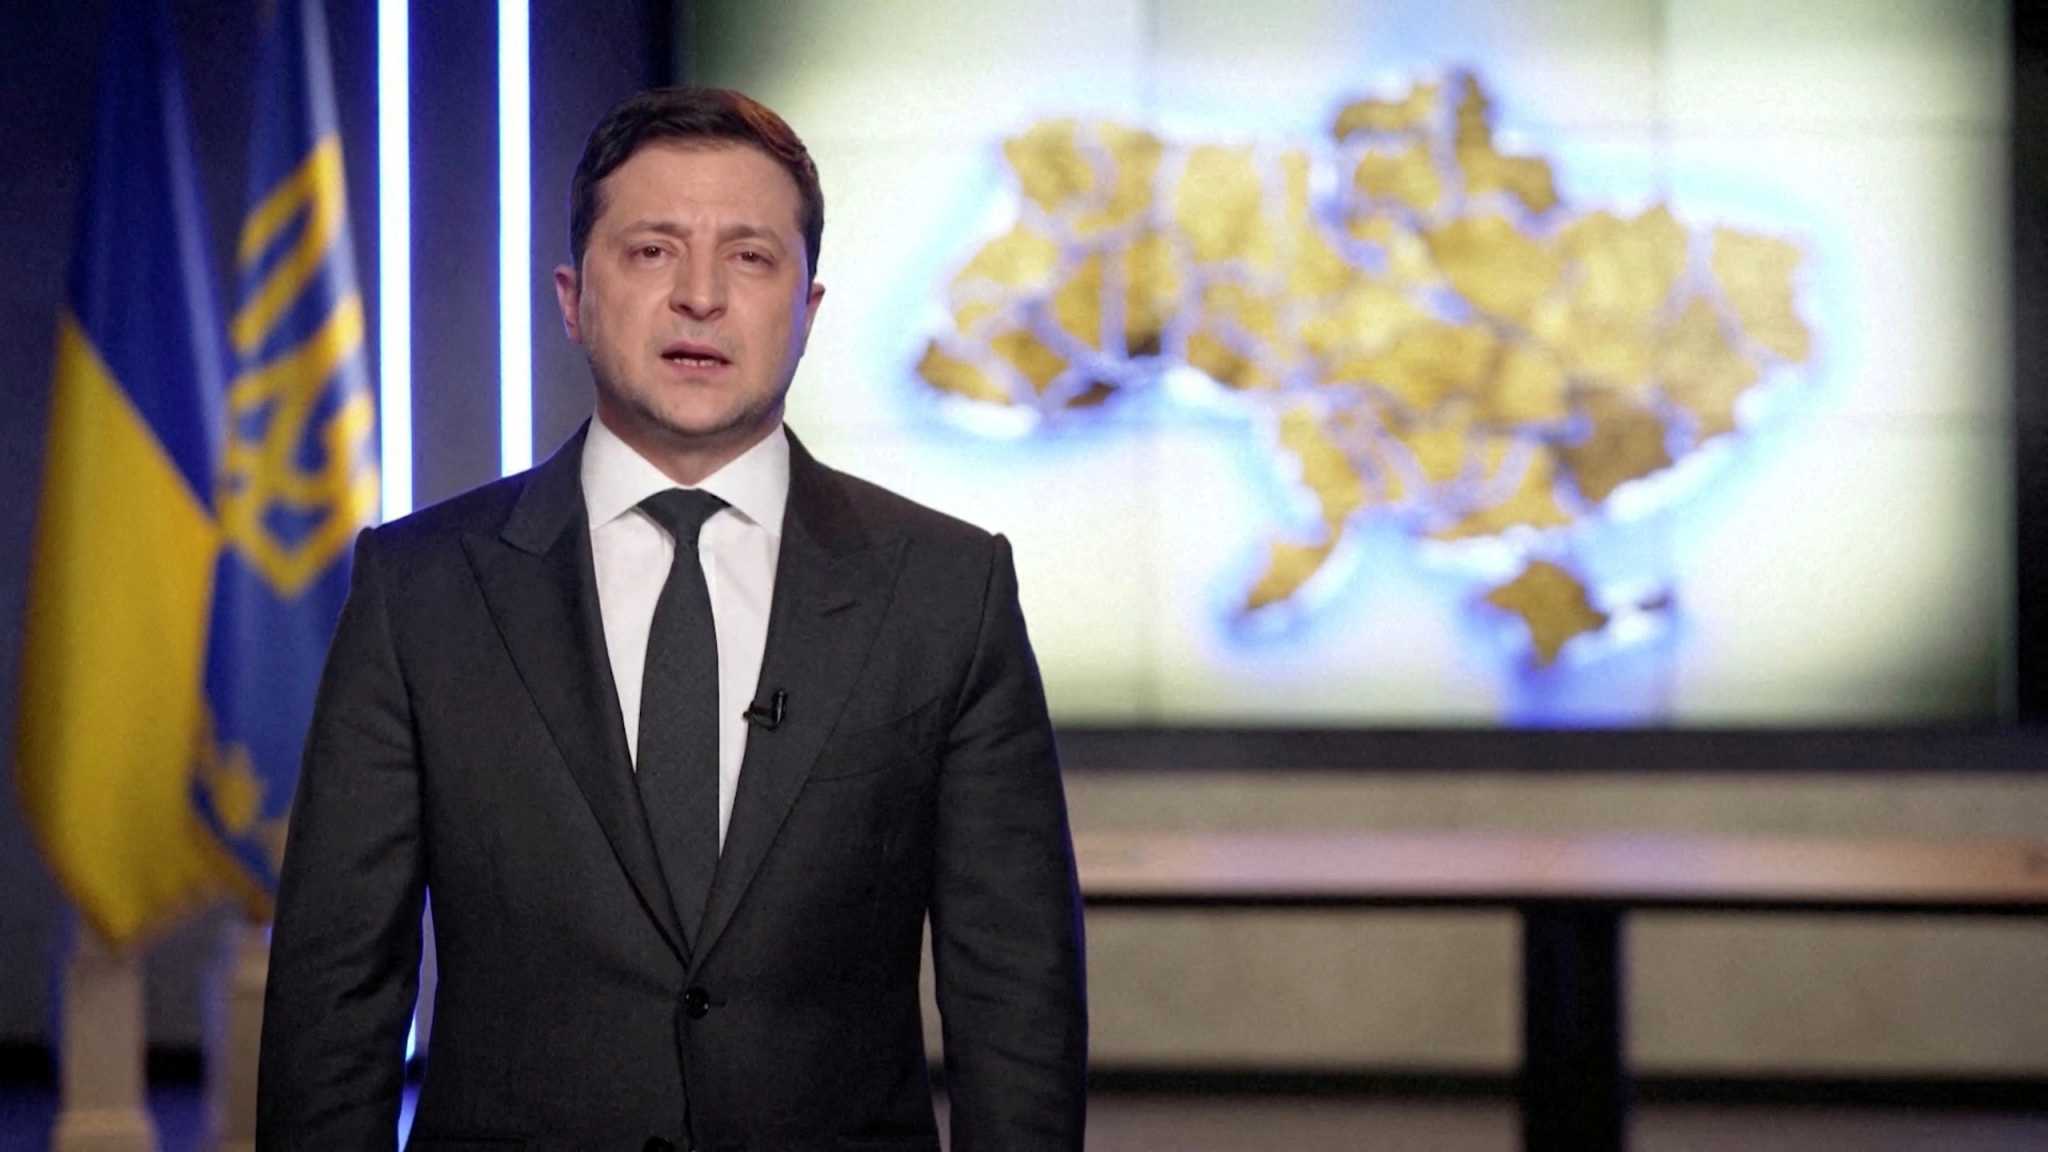 Εισβολή στην Ουκρανία: Δραματικό διάγγελμα Ζελένσκι – «Μείνετε δυνατοί, θα νικήσουμε»